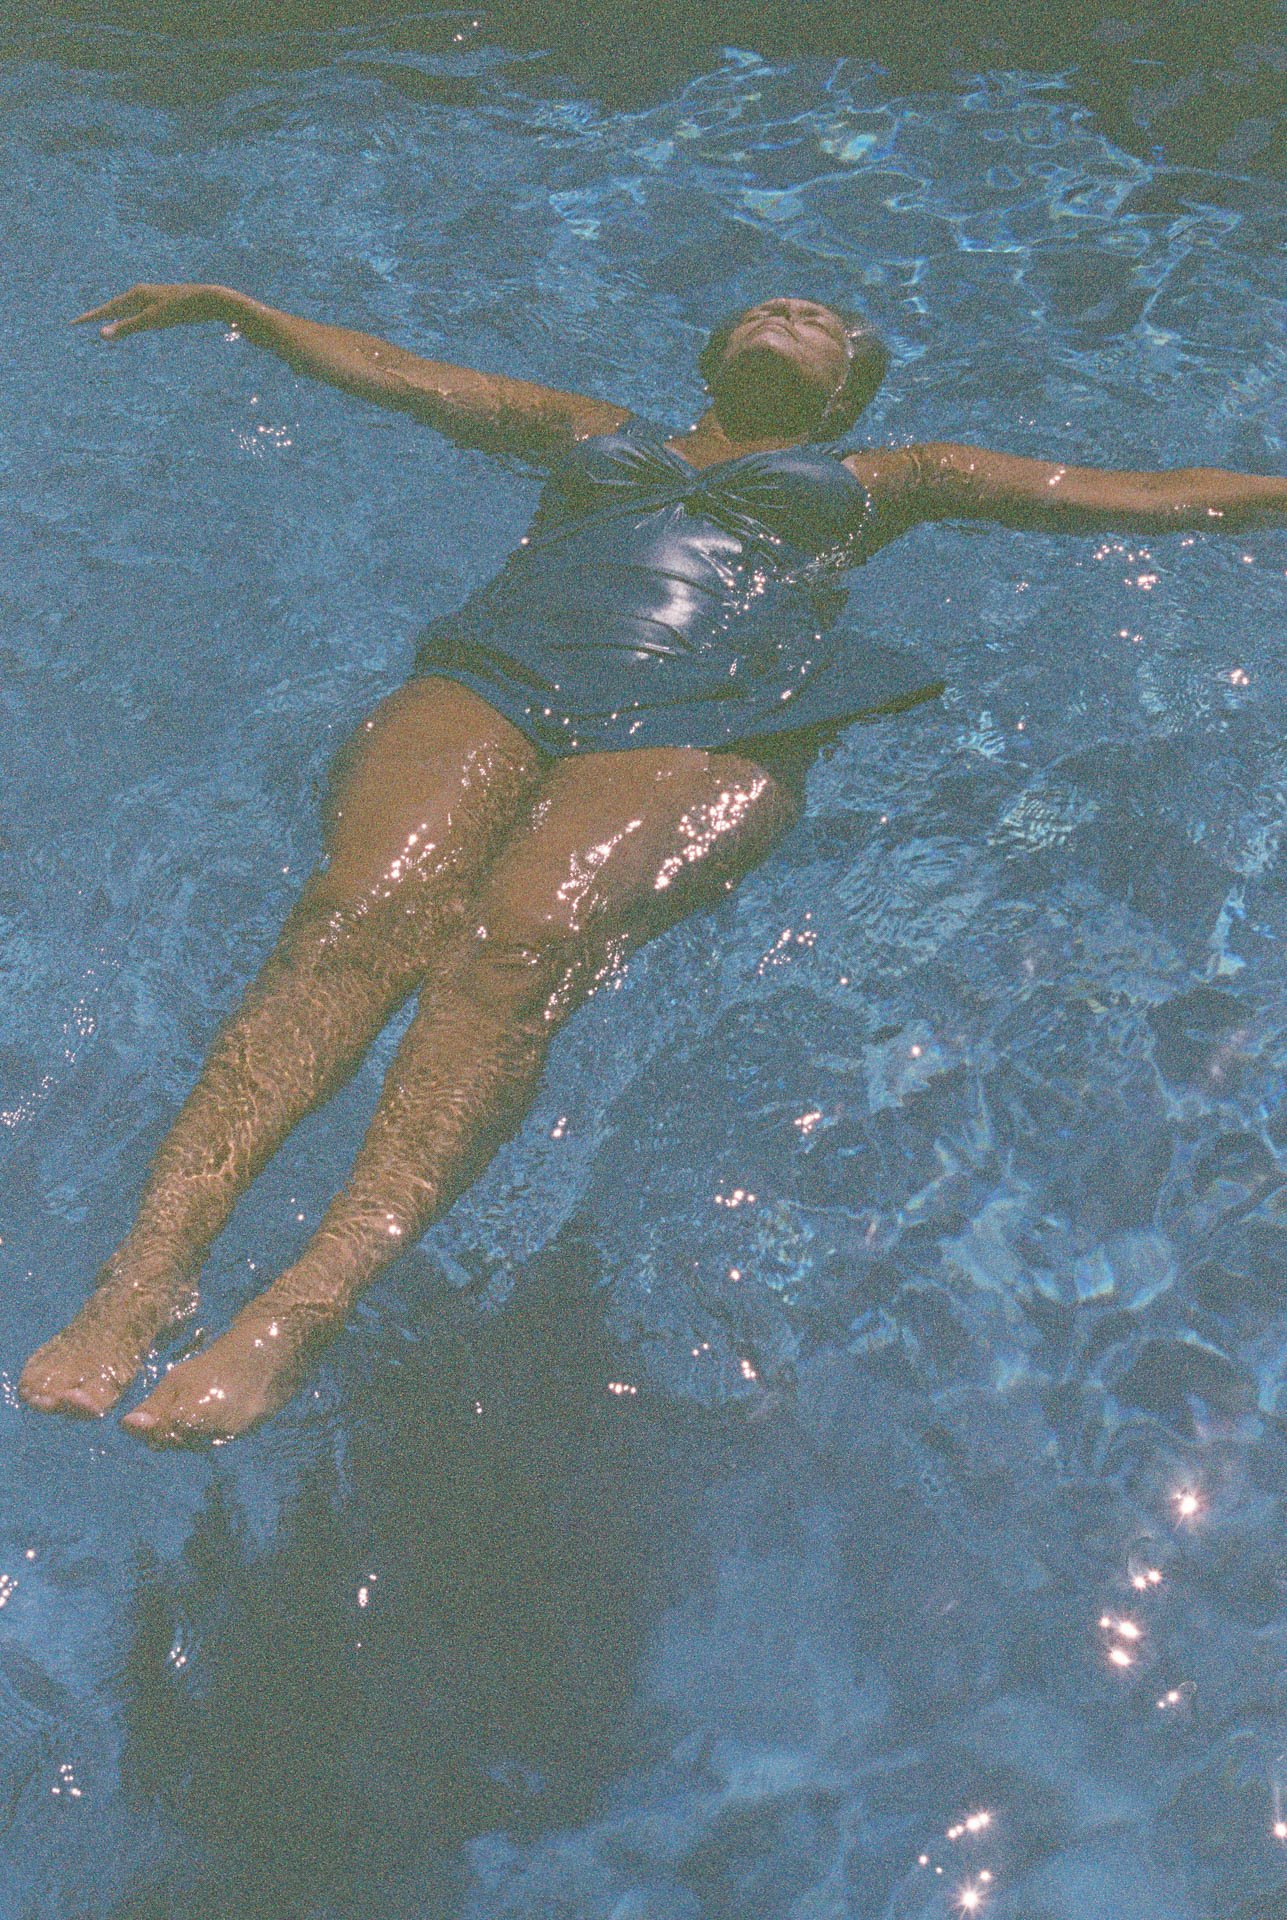 Floating-in-a-Pool-on-Film.jpg